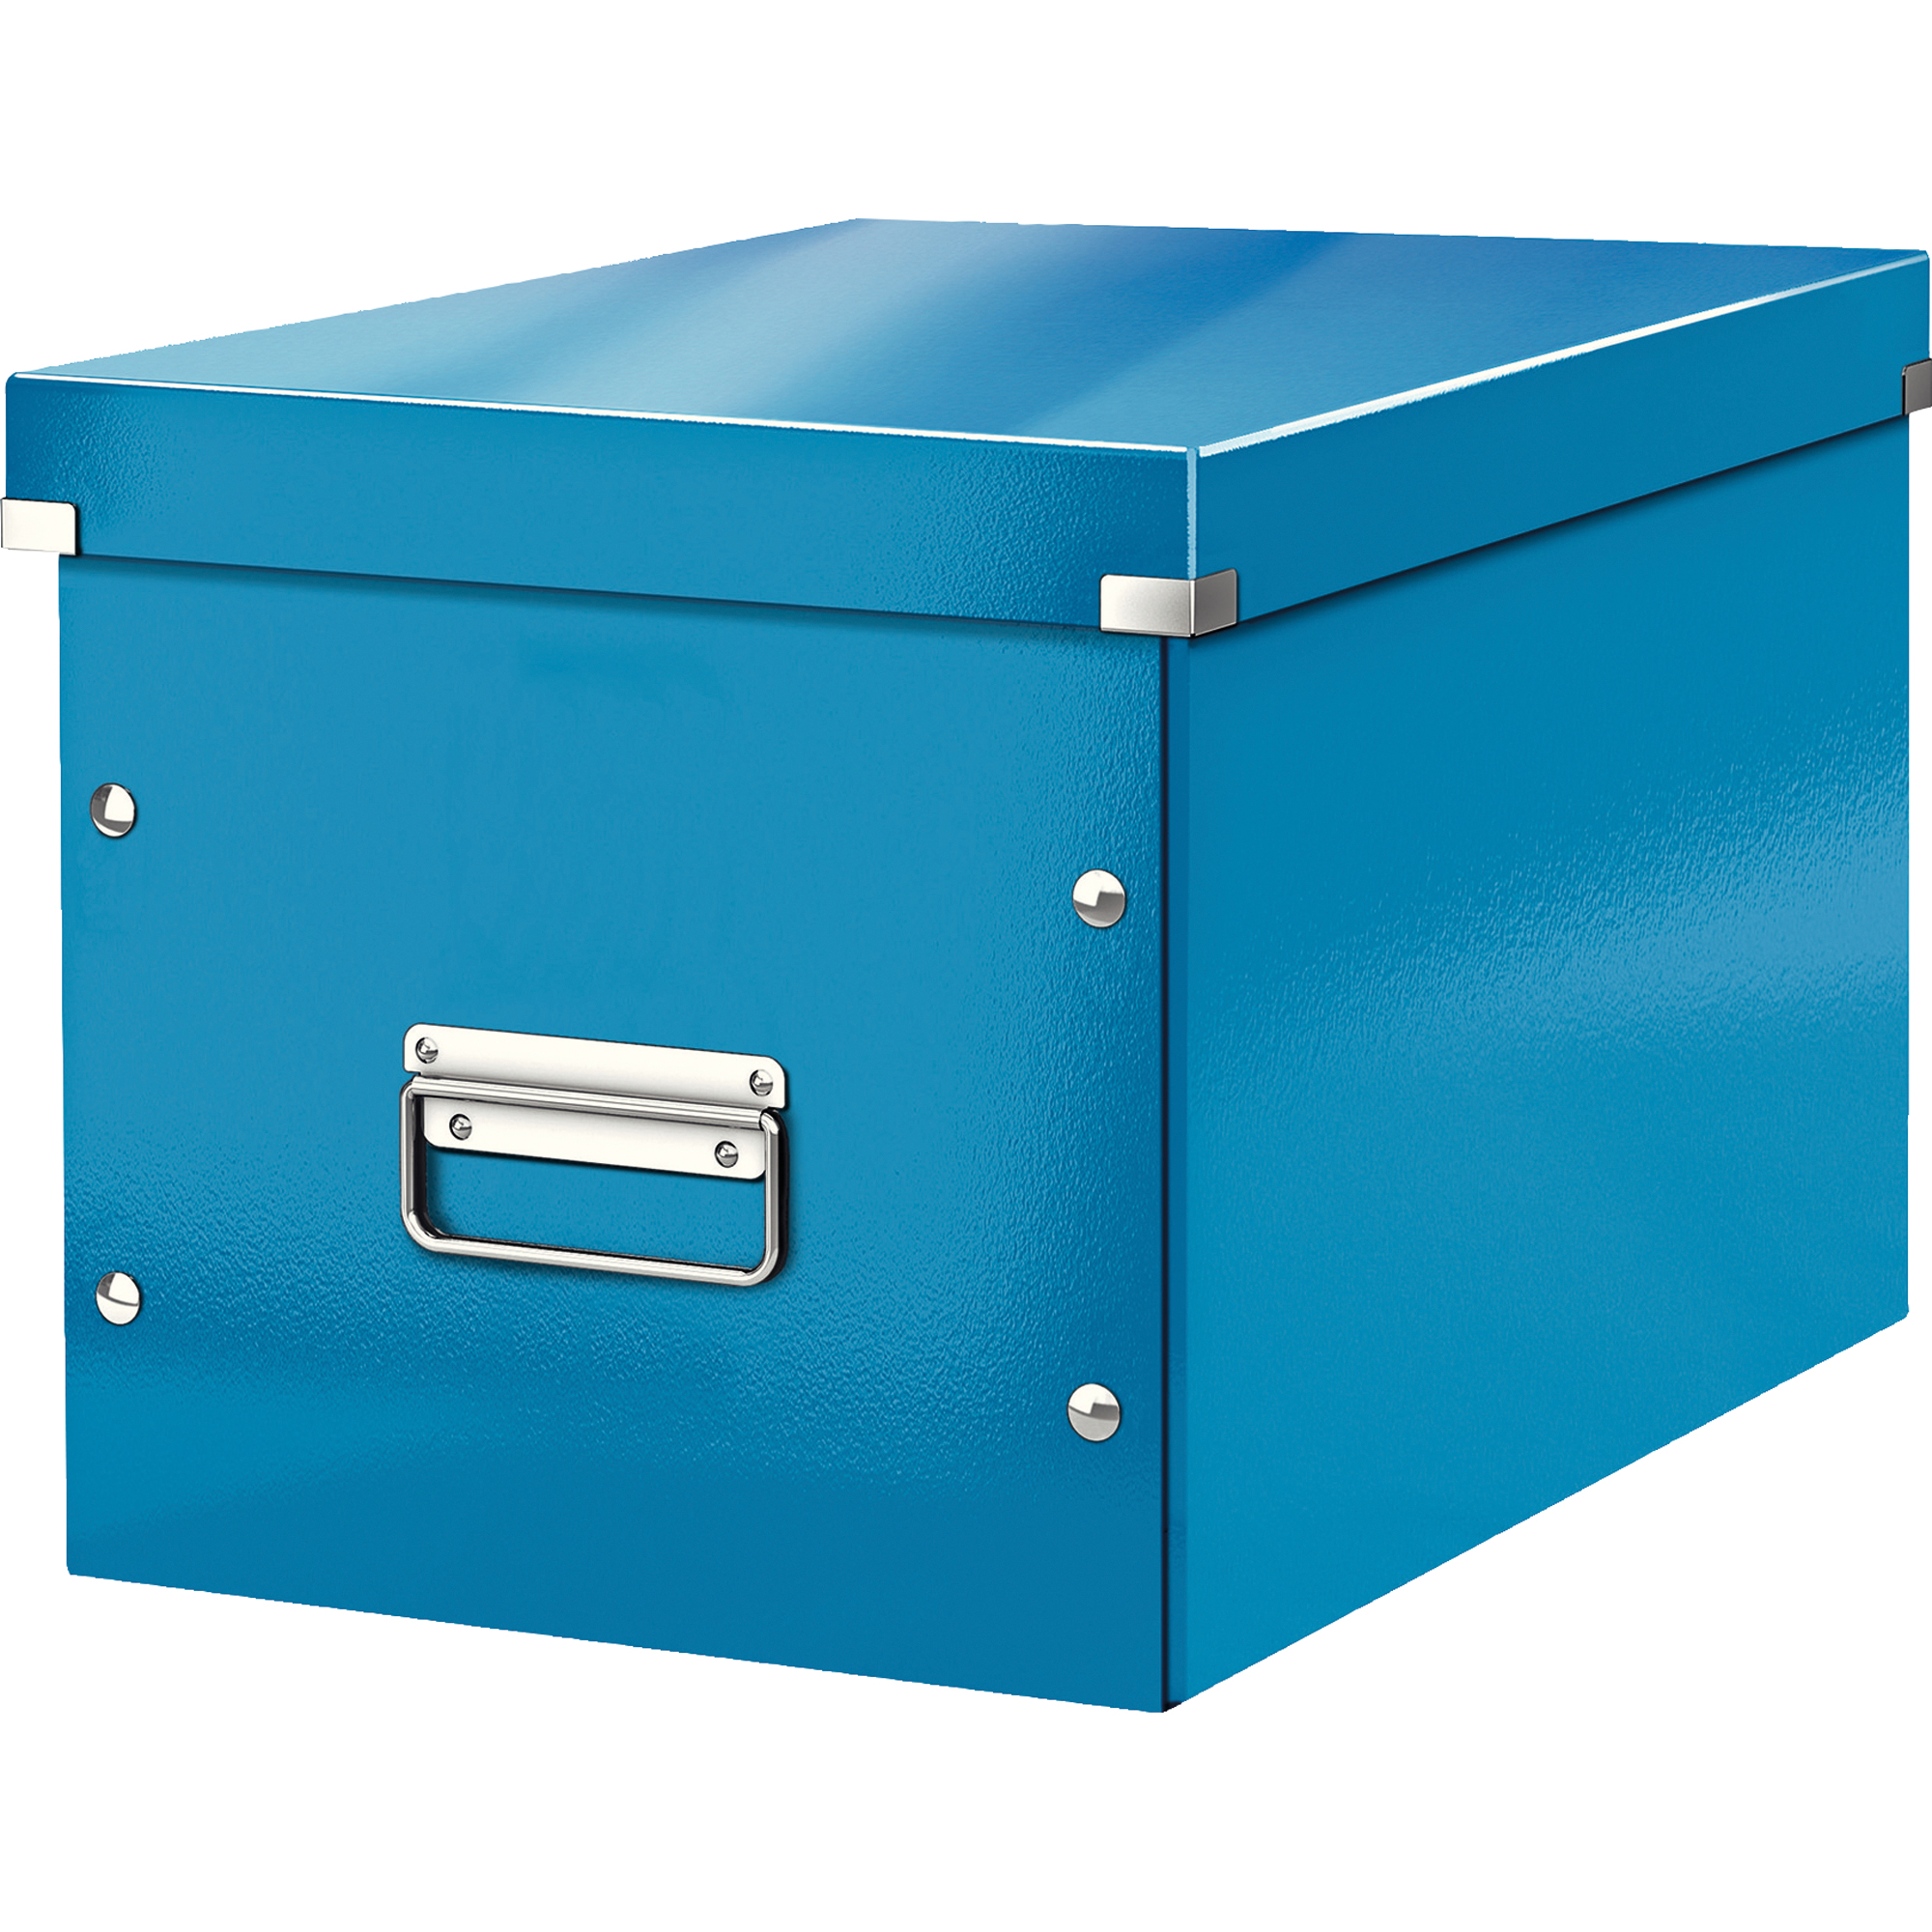 Leitz Archivbox Click & Store Cube 32 x 31 x 36 cm ohne Archivdruck blau